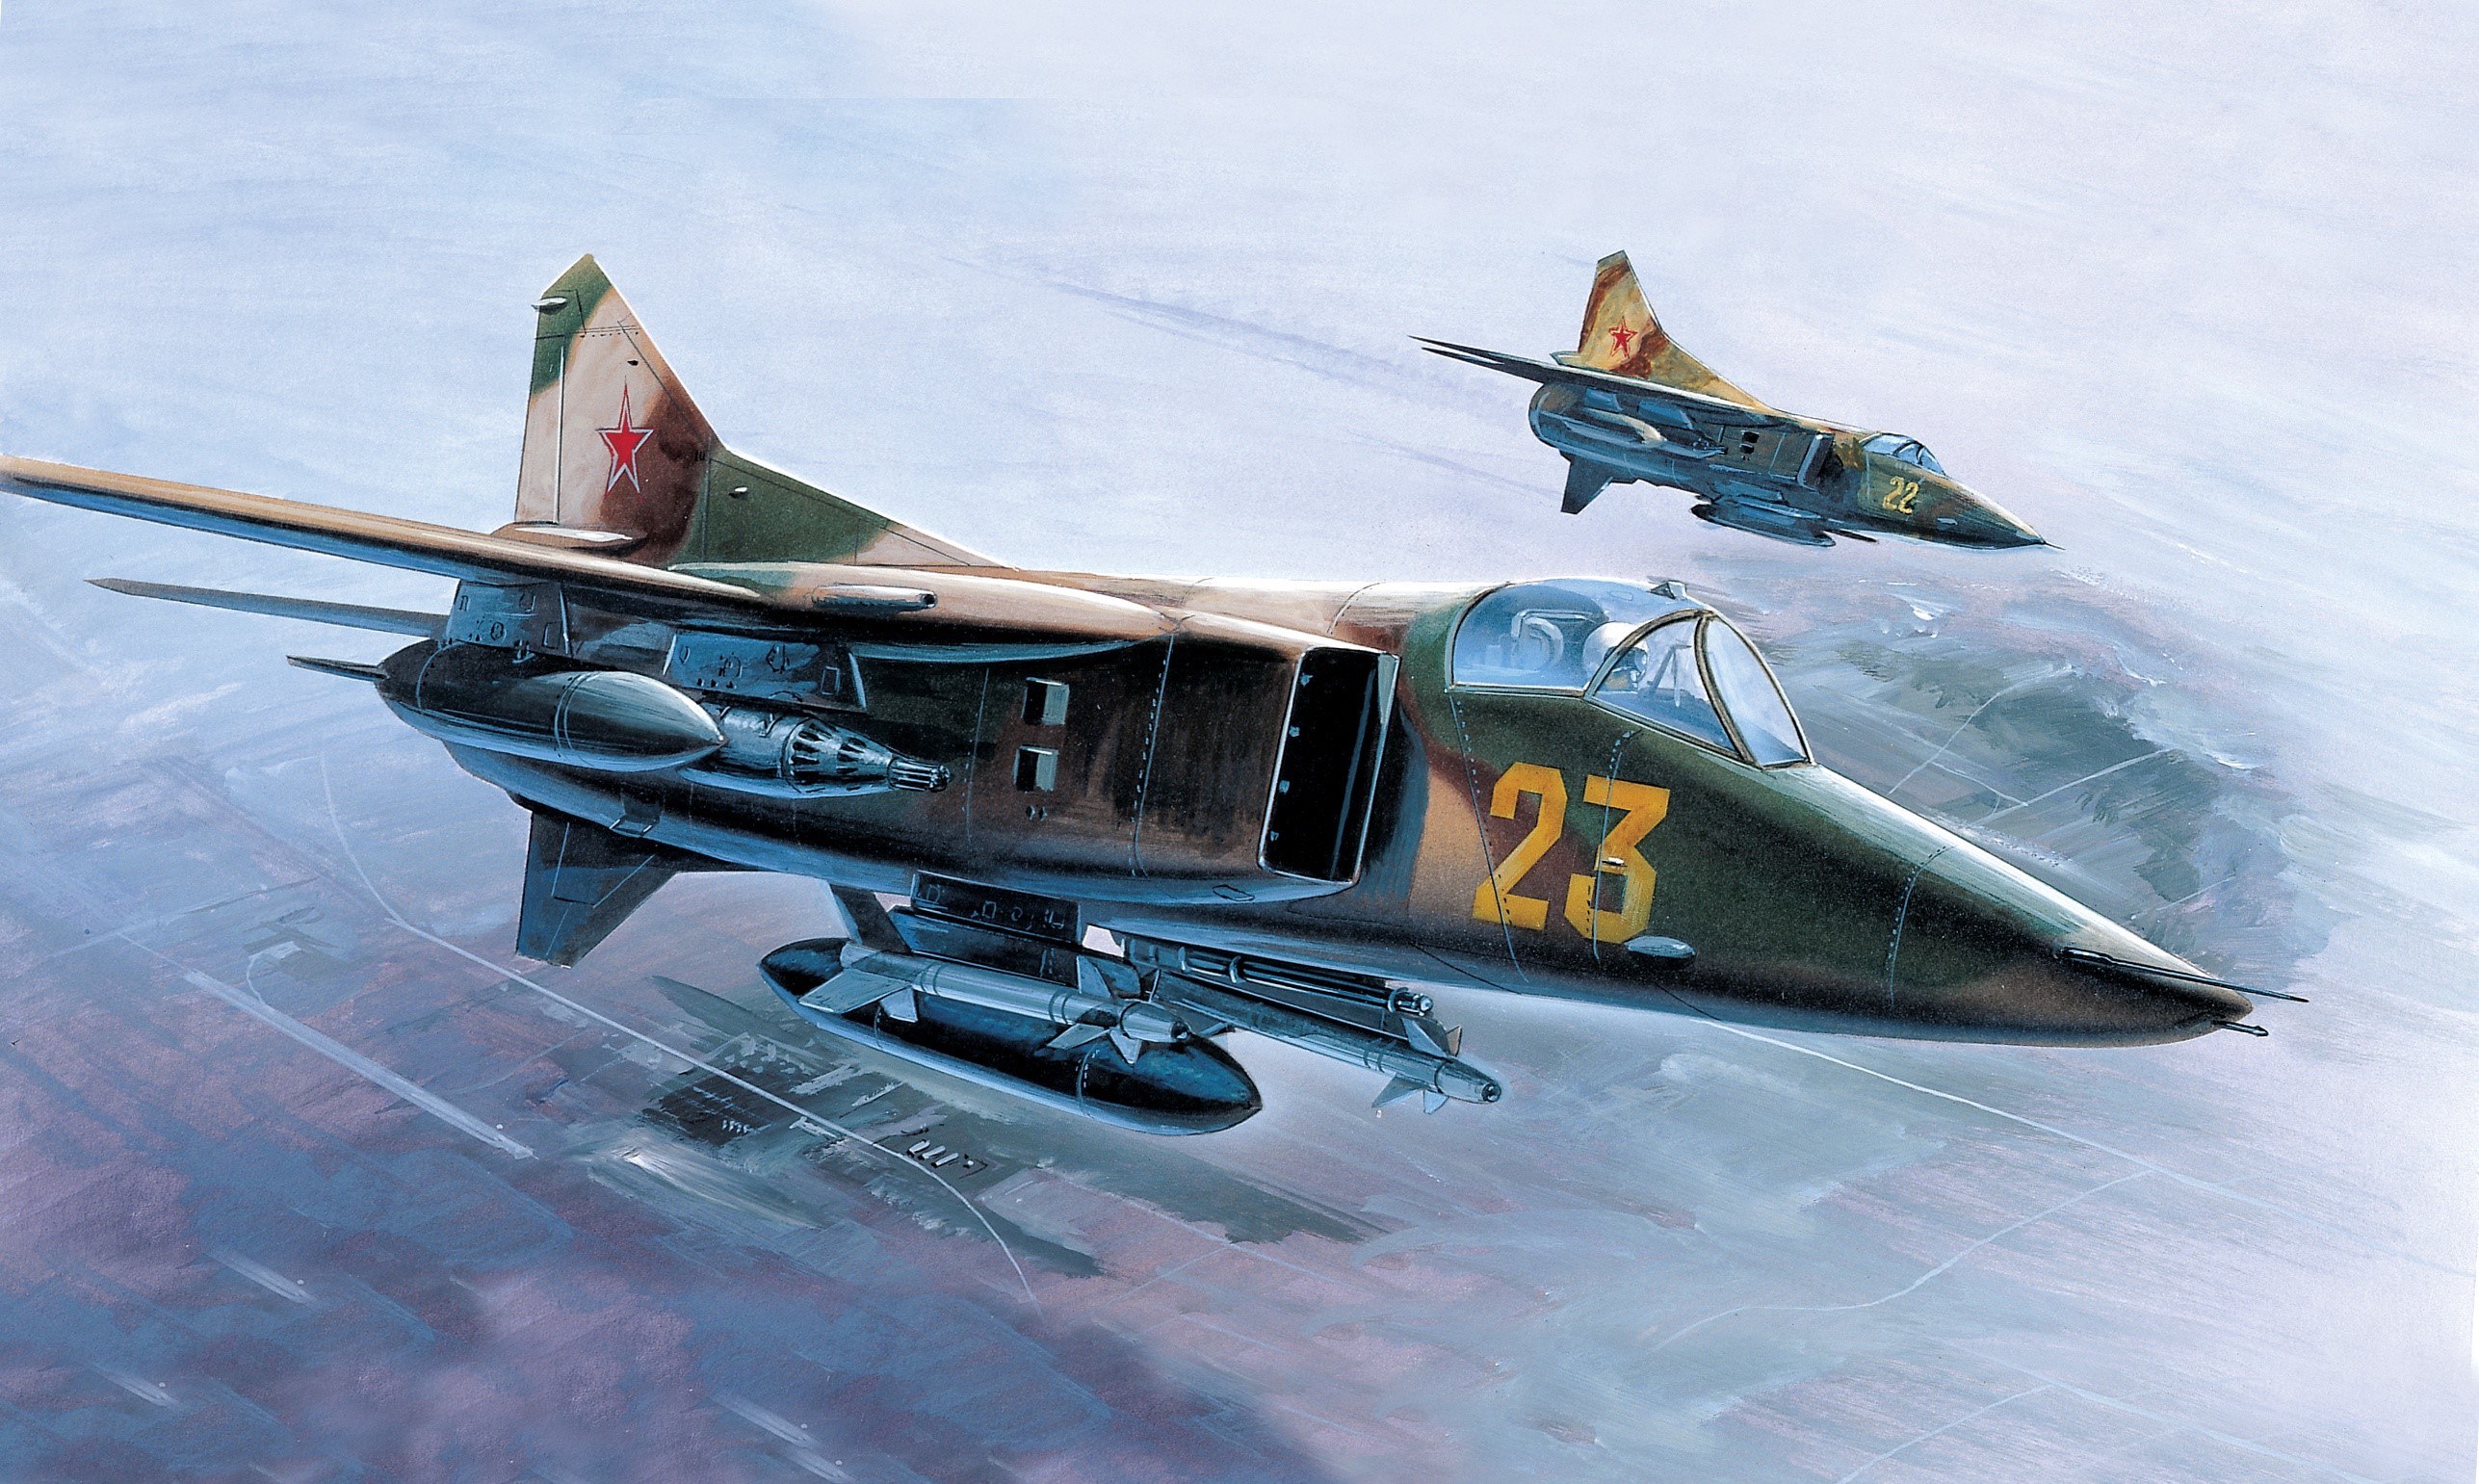 Wallpaper / Aircraft, Military, Military Aircraft, Vehicle, Artwork, MiG MiG 27